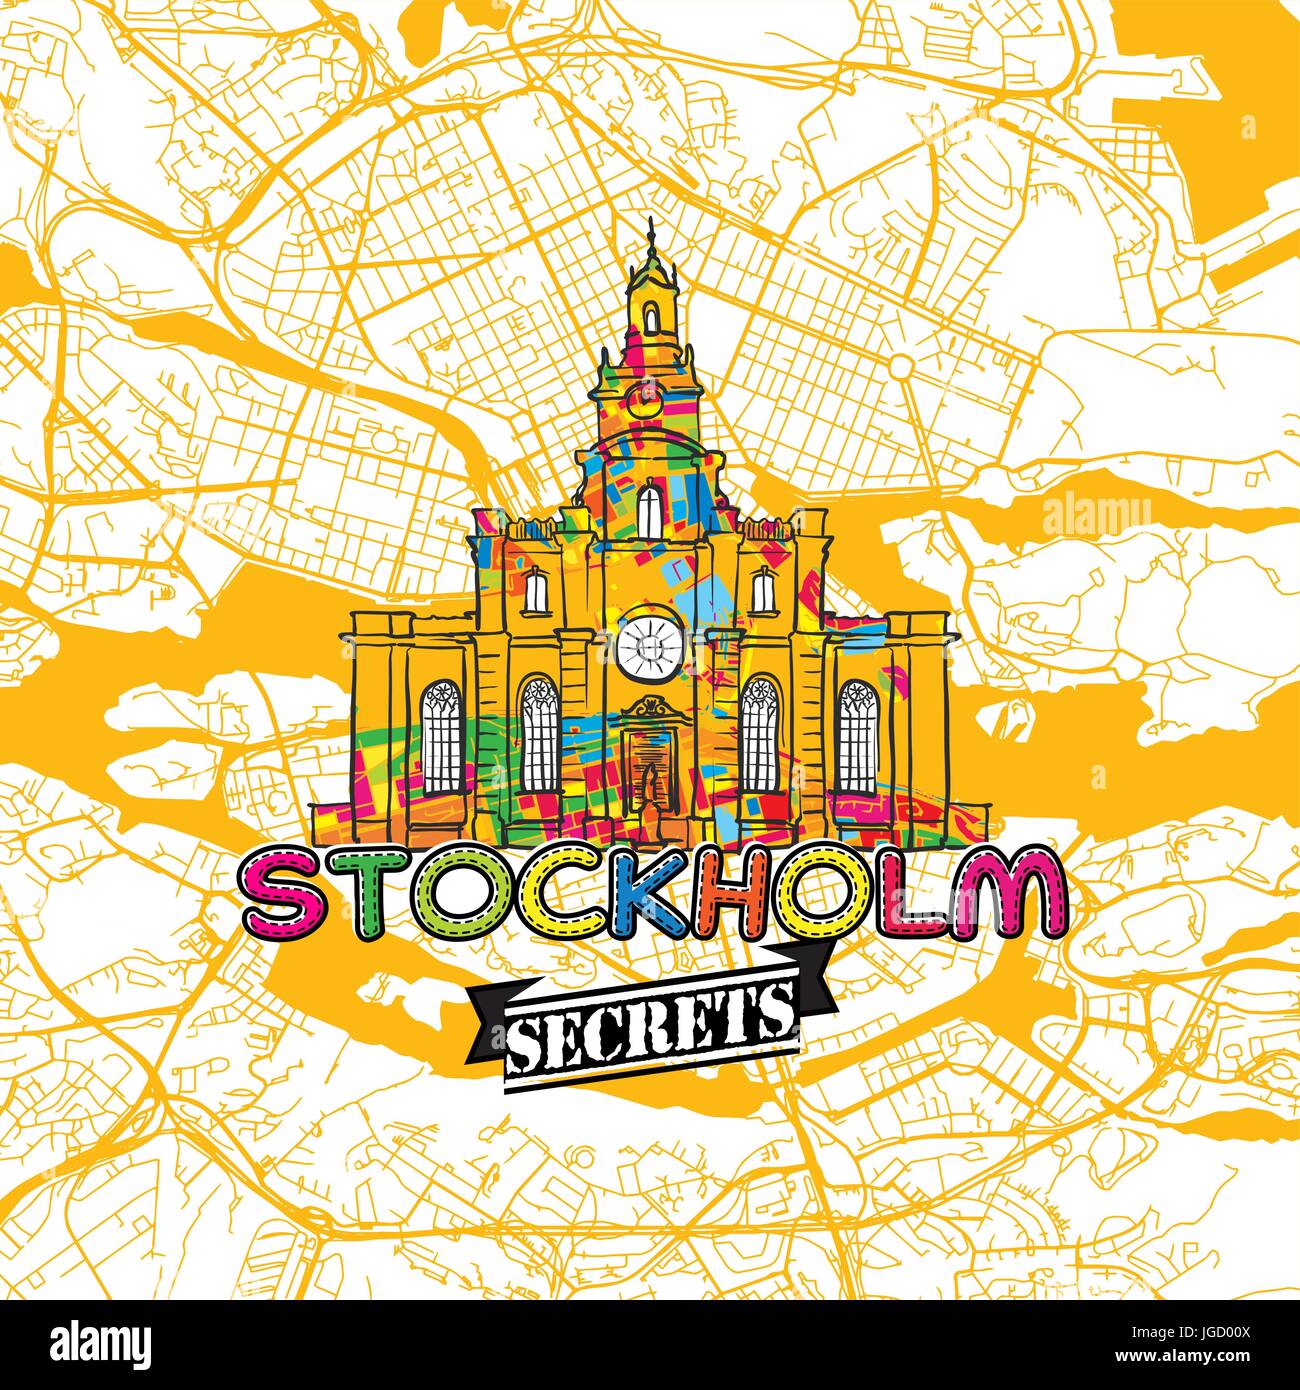 Stockholm Reise Geheimnisse Art Map für die Zuordnung von Experten und Reiseführer. Handgemachte Stadt Logo, Typo-Abzeichen und Hand gezeichnete Vektorbild auf Top sind gruppiert Stock Vektor